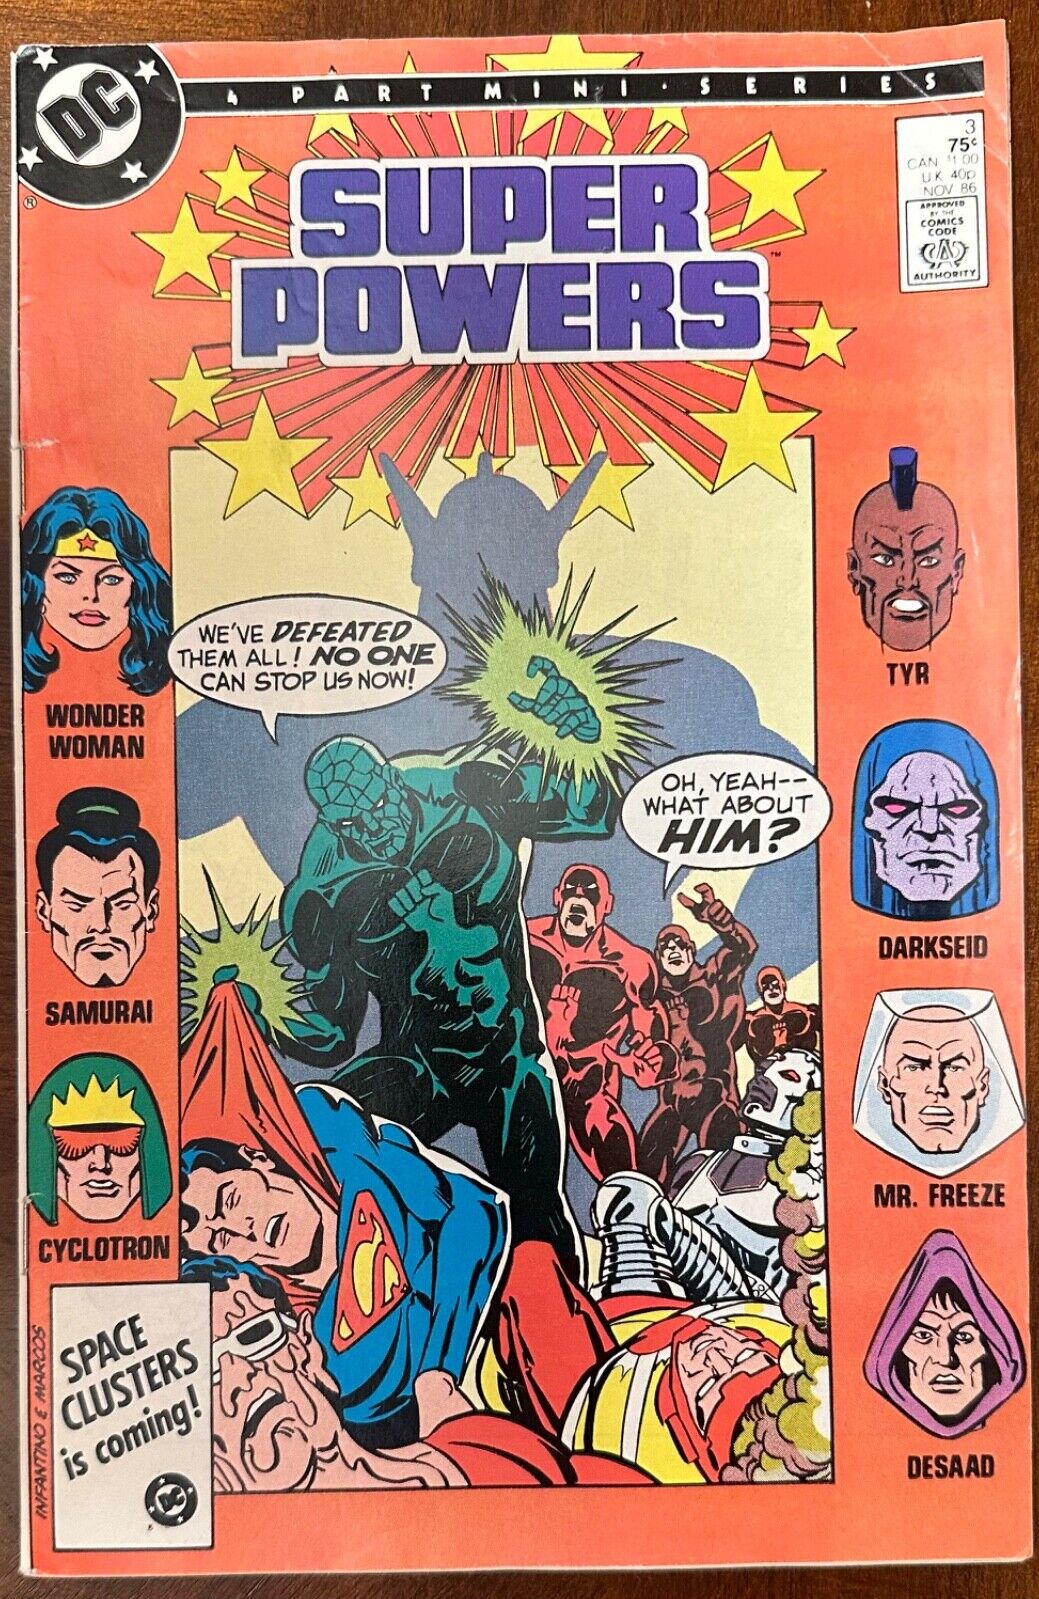 Super Powers #3 | FN | November 1986 DC Comics